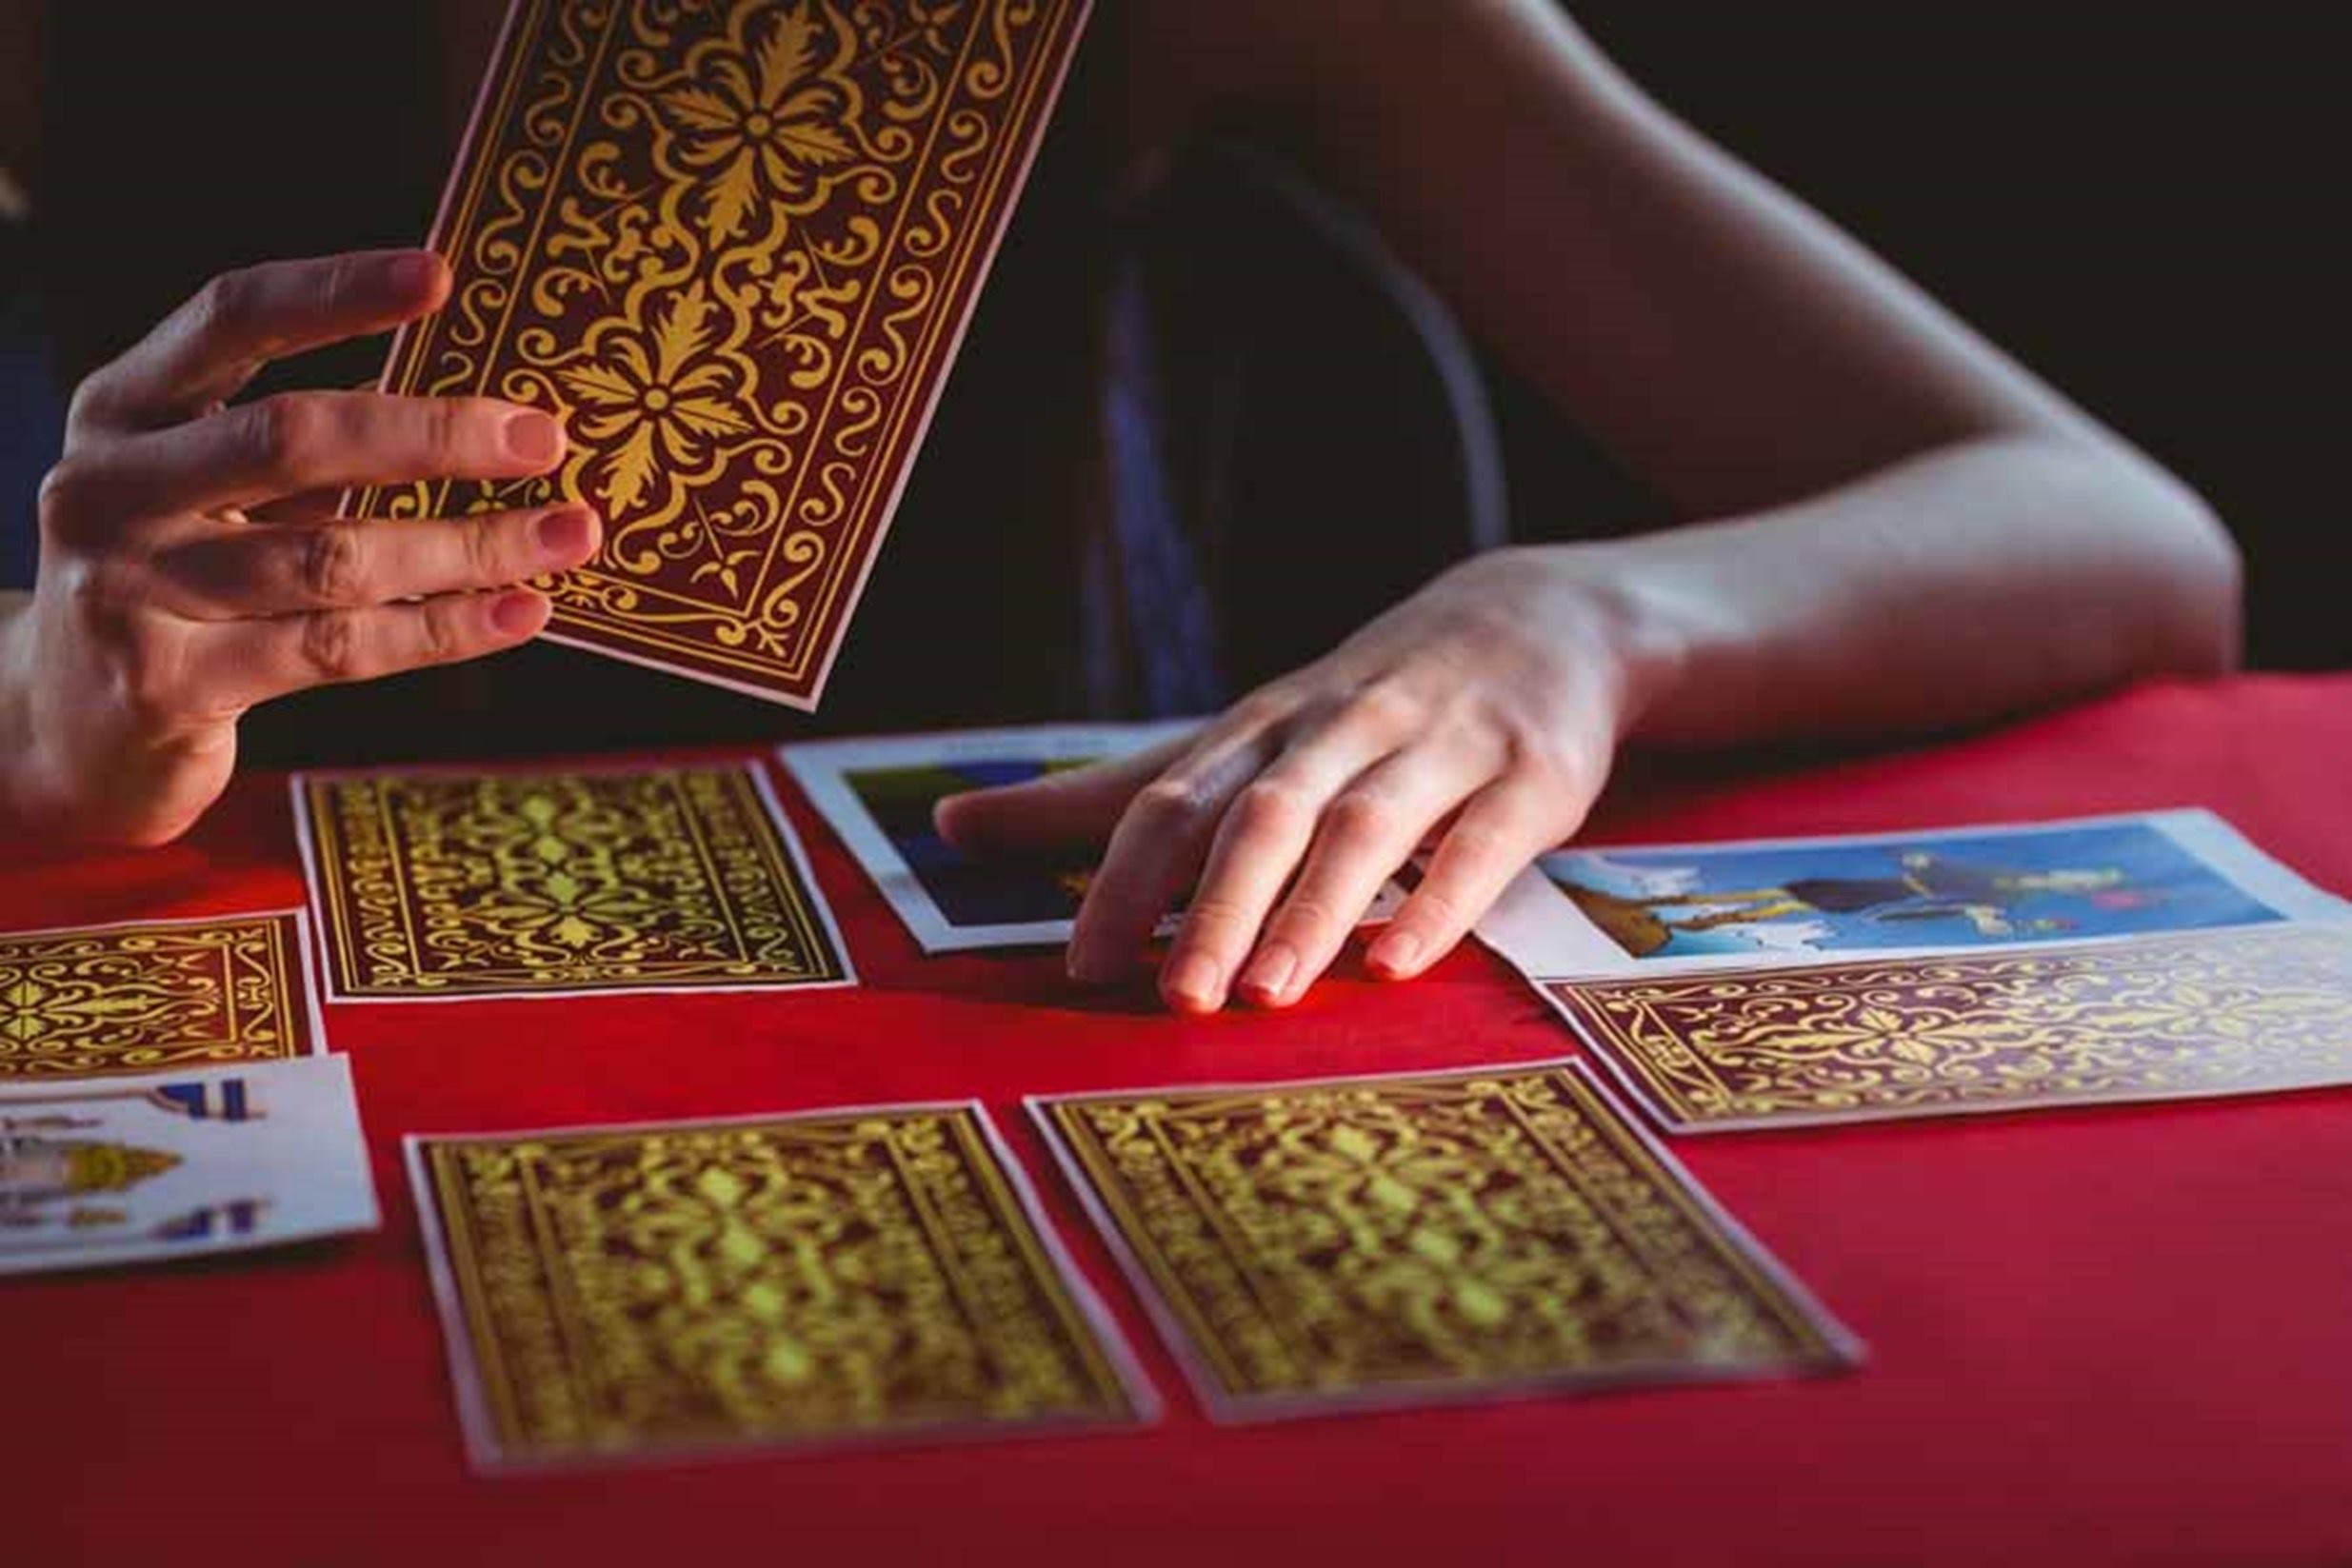 Torso y manos de una mujer joven. Está leyendo las cartas de tarot que están puestas sobre una mesa con mantel rojo. Hay varias cartas boca abajo y tiene una en su mano. 